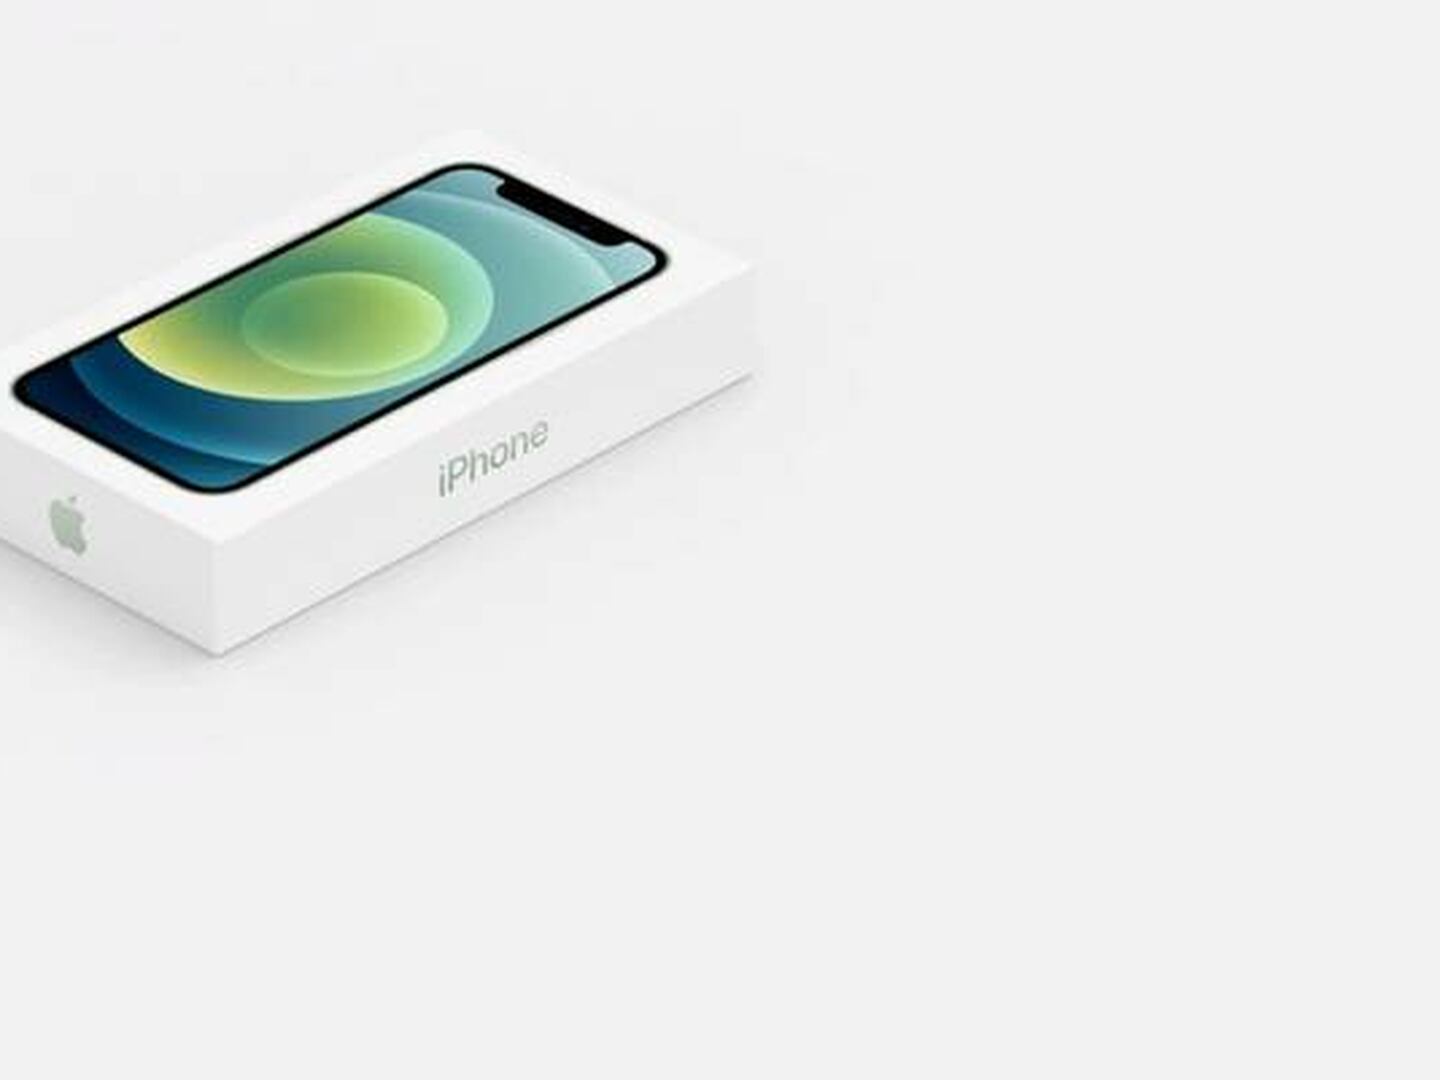 Apple: Vender el iPhone sin cargador impactó positivamente el ambiente